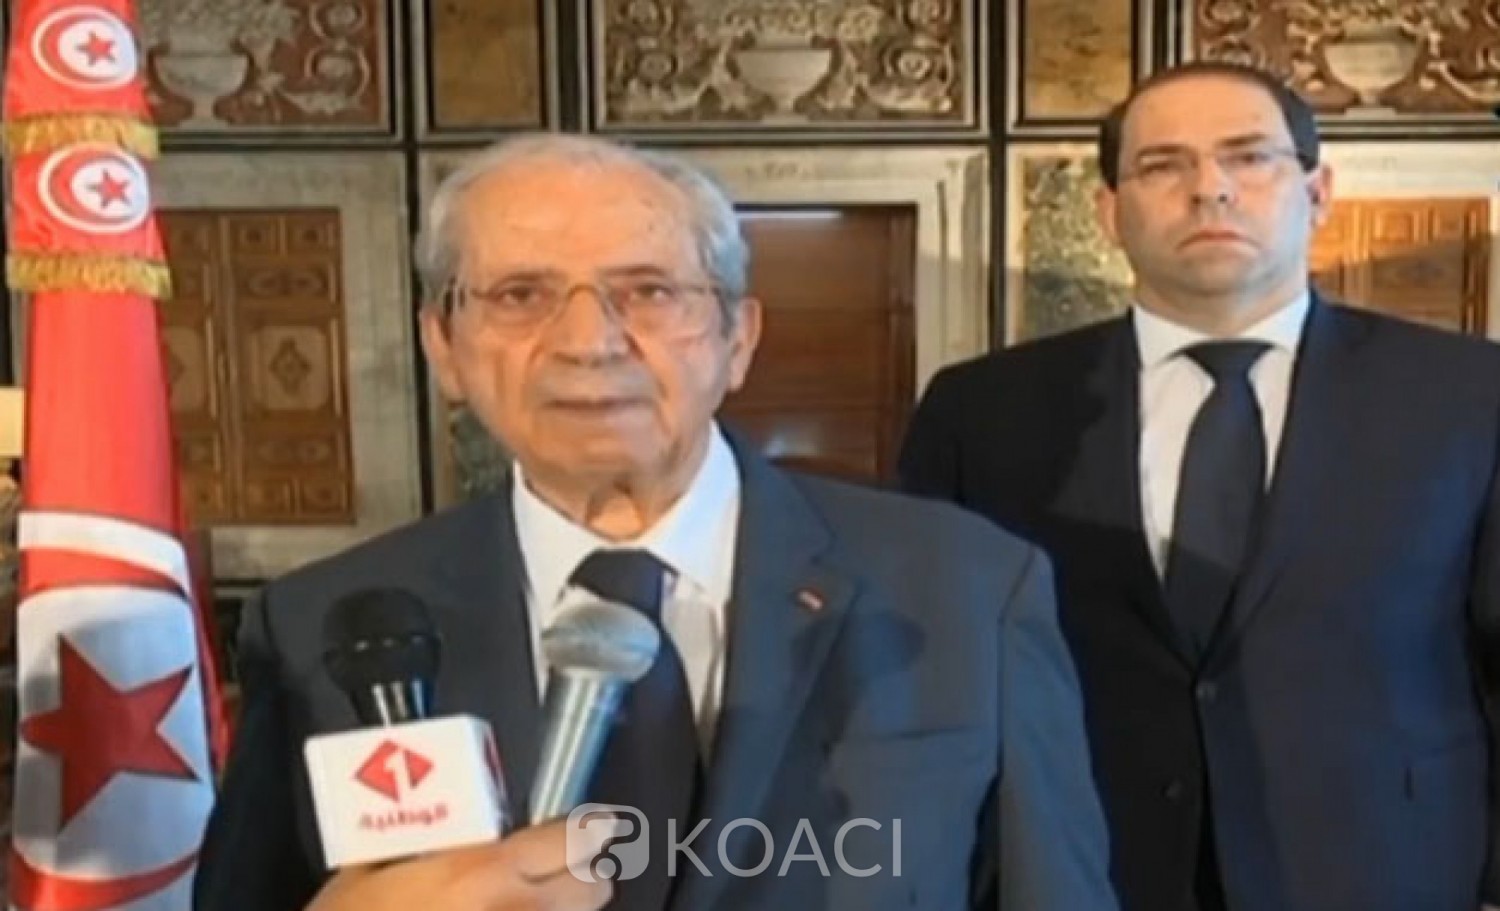 Tunisie: Report de la Présidentielle après le décès de Béji Caïd Essebsi, le chef du parlement, Mohammed Ennaceur président par intérim